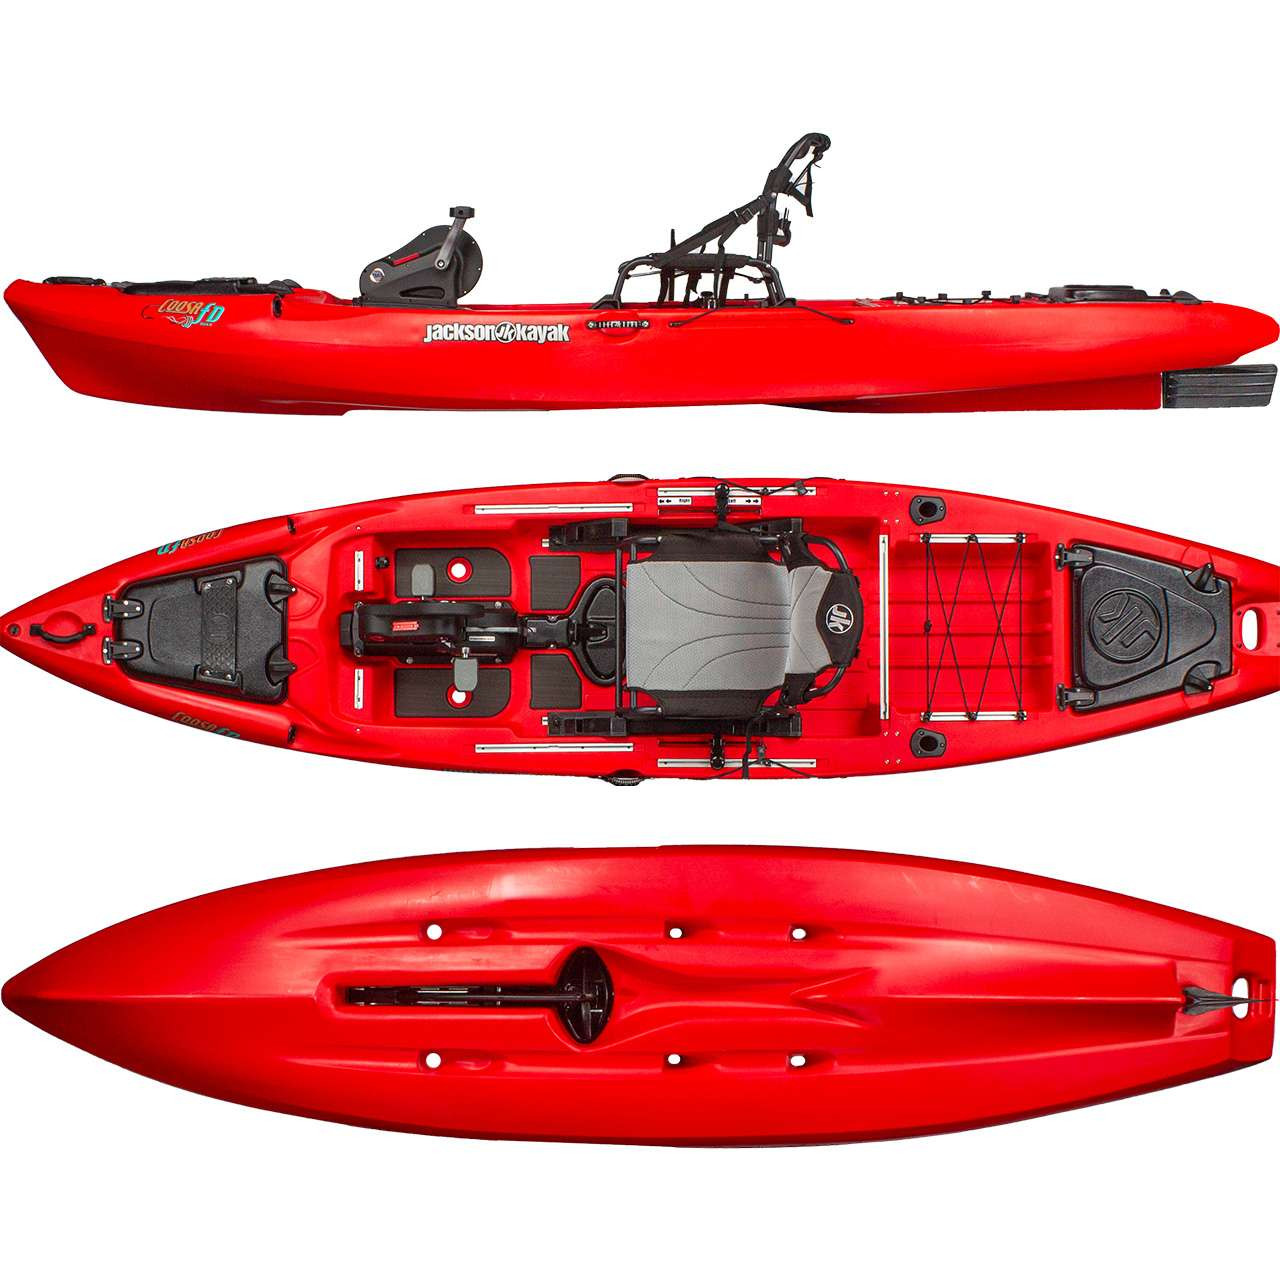 Venta online Kayak de pesca a pedales Jackson Coosa FD al mejor precio